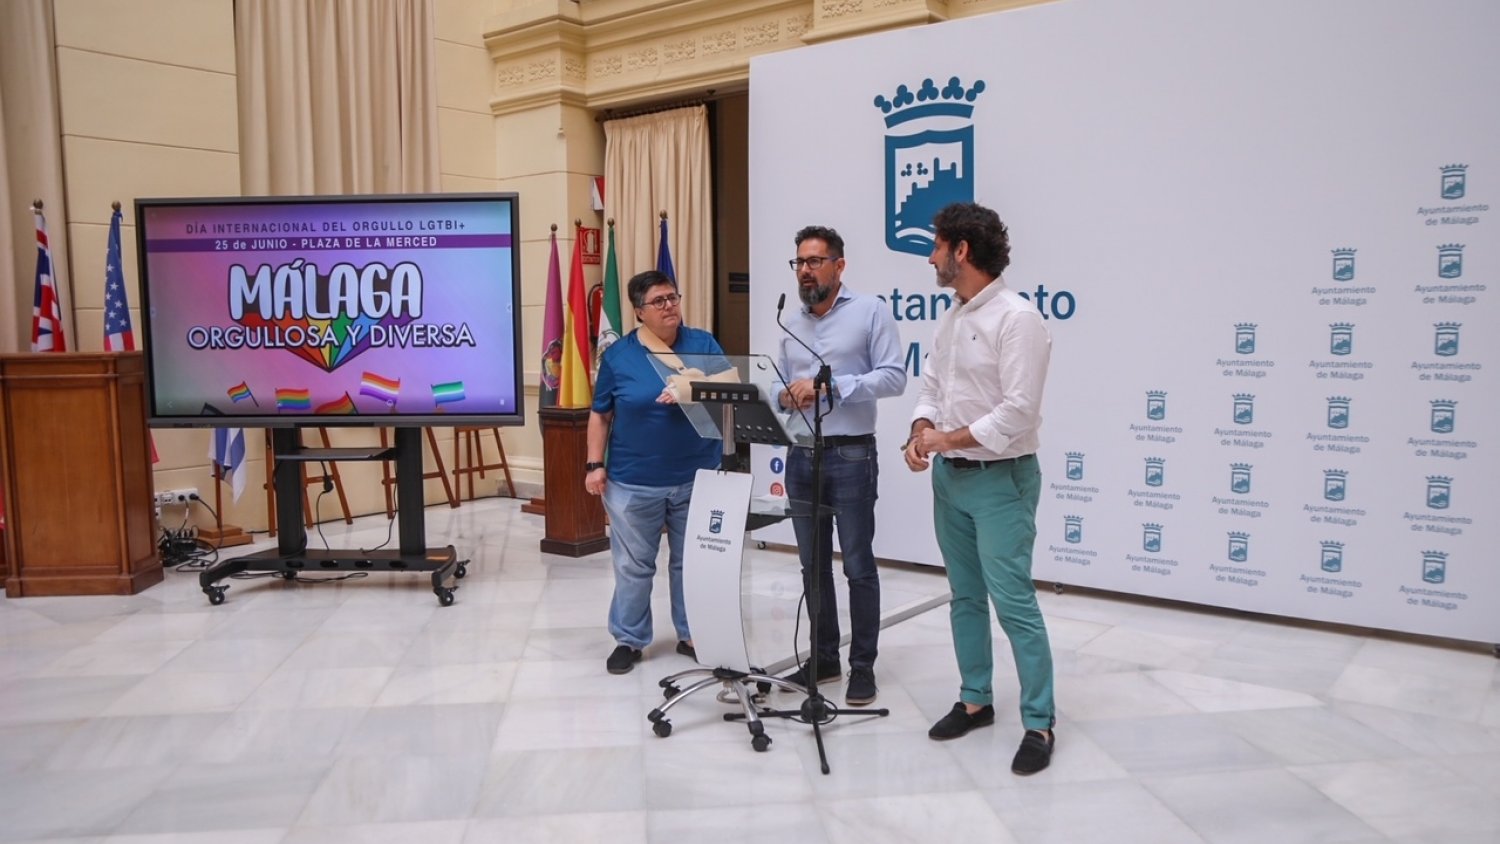 El Ayuntamiento organiza 'Málaga orgullosa y diversa' para conmemorar el Día Internacional del Orgullo LGTBI+